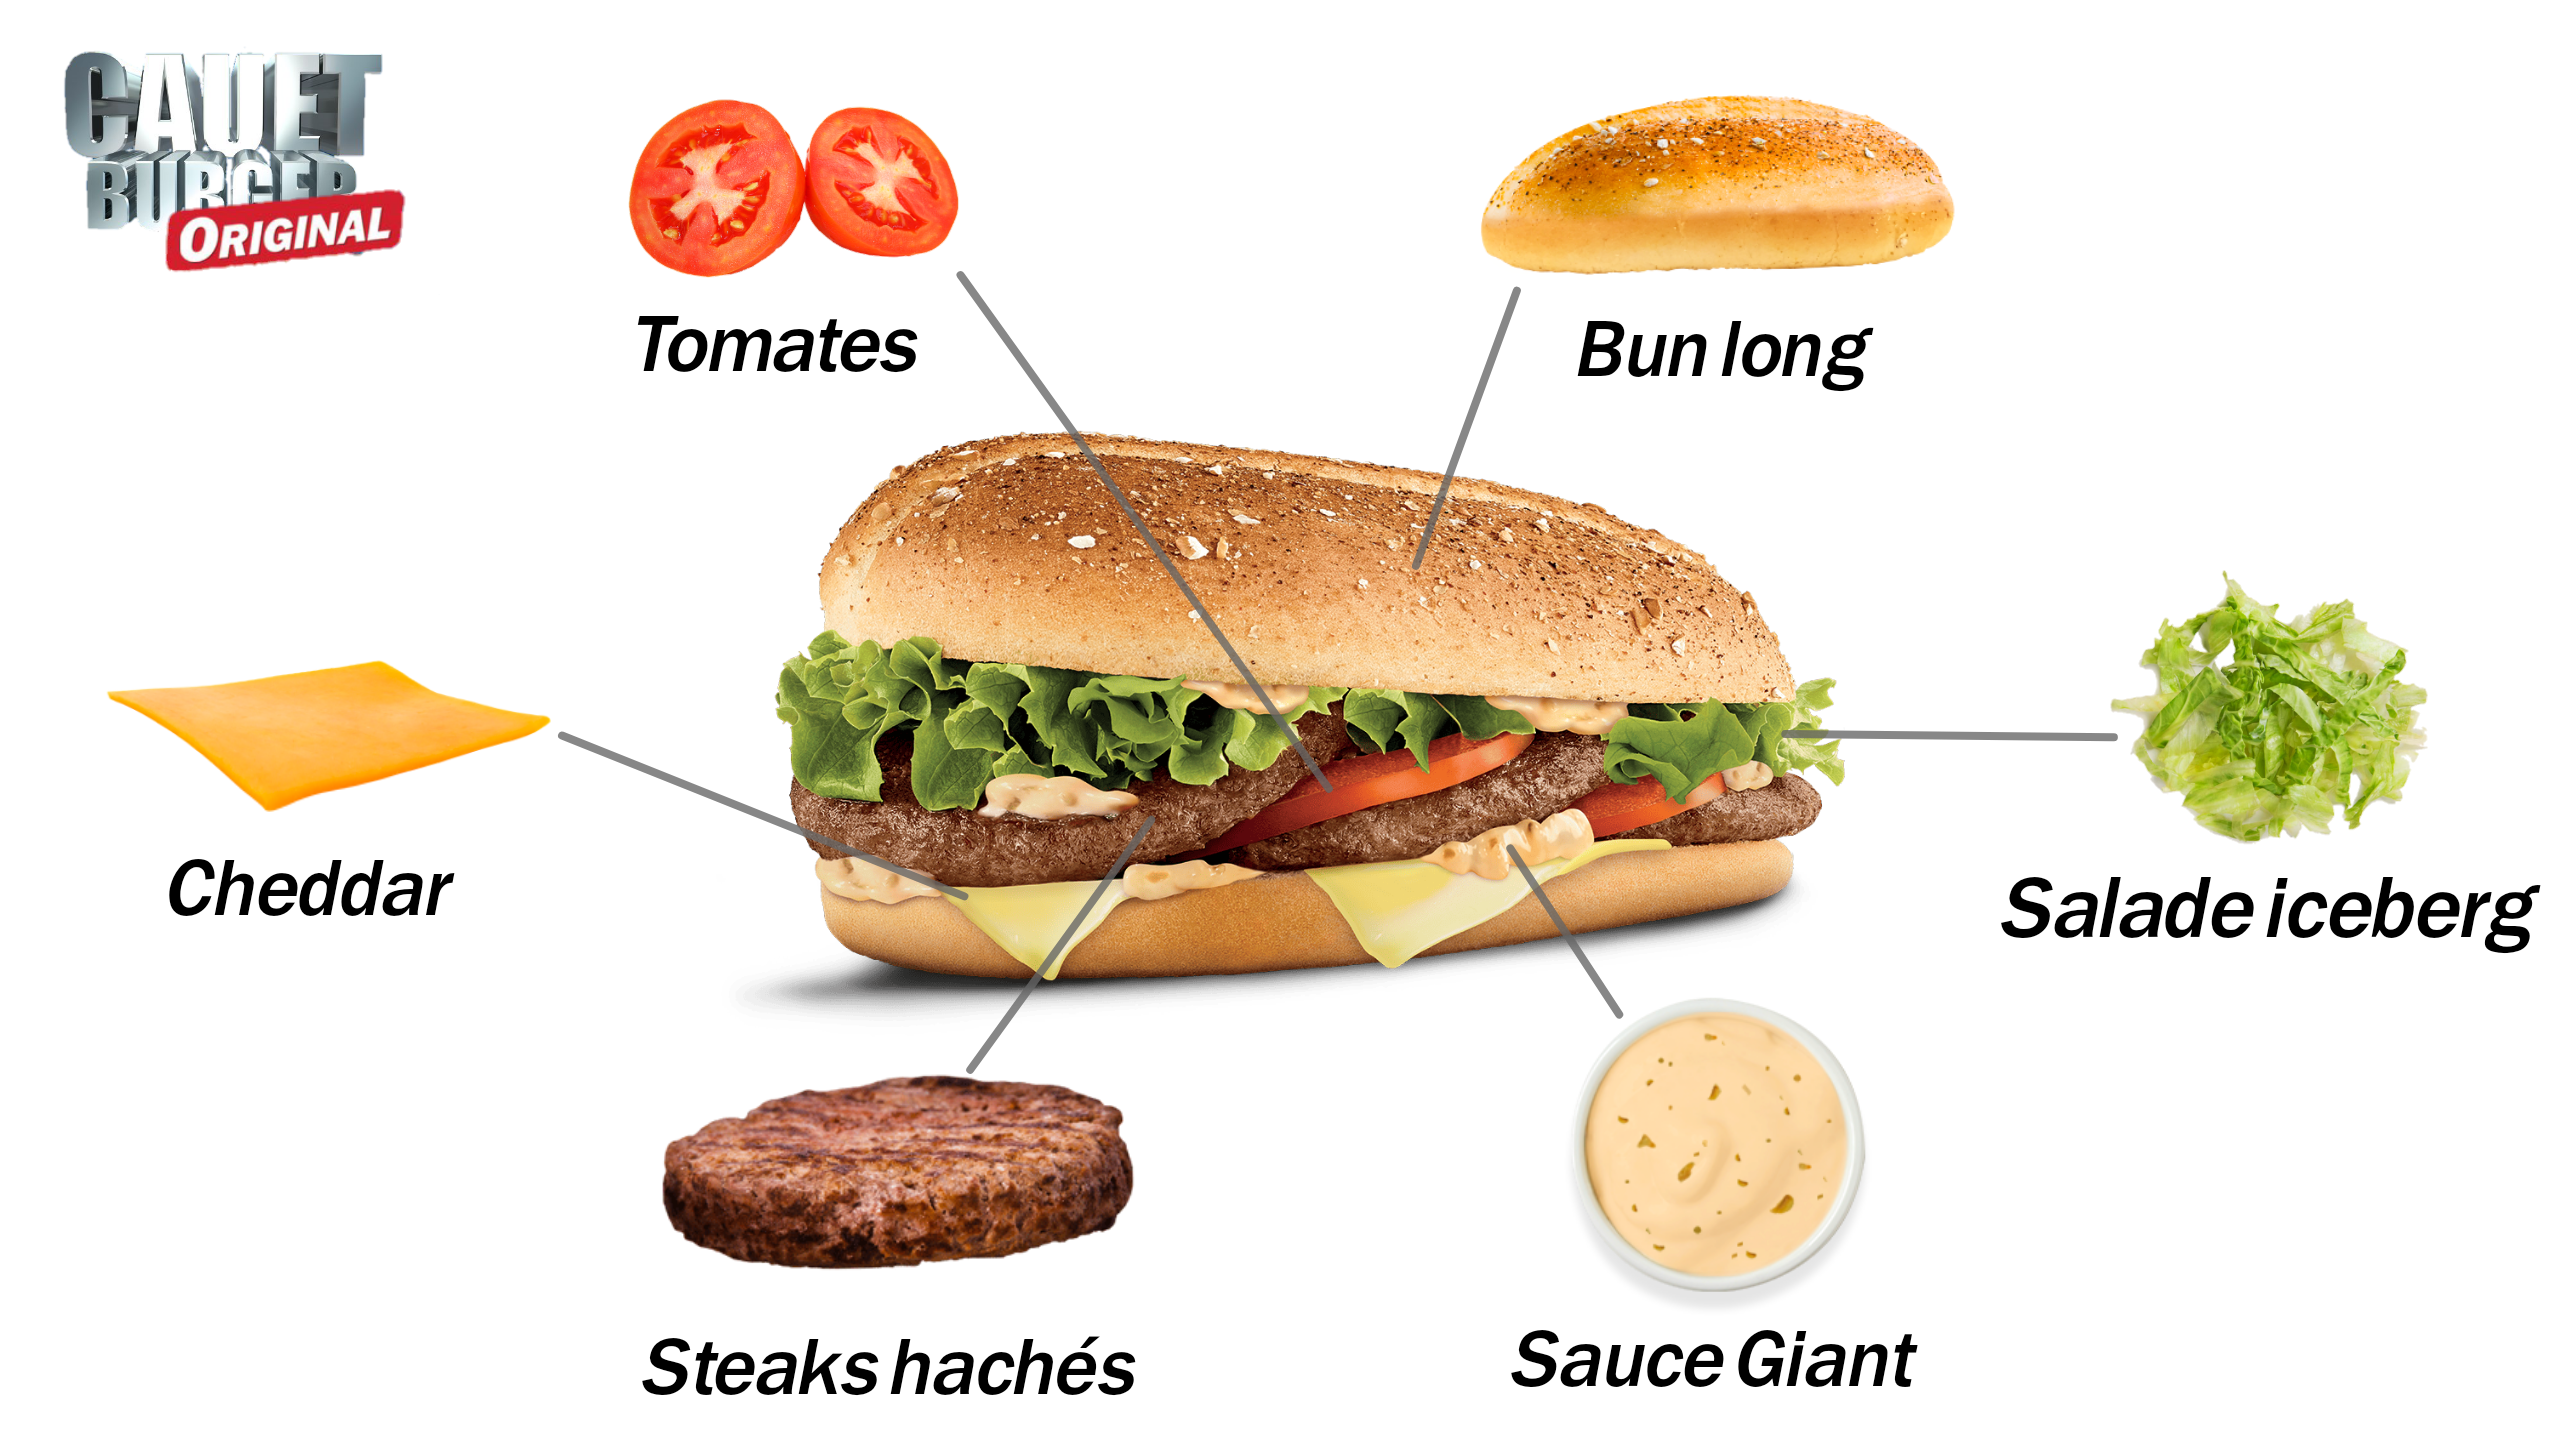 Les ingrédients du Cauet Burger Original